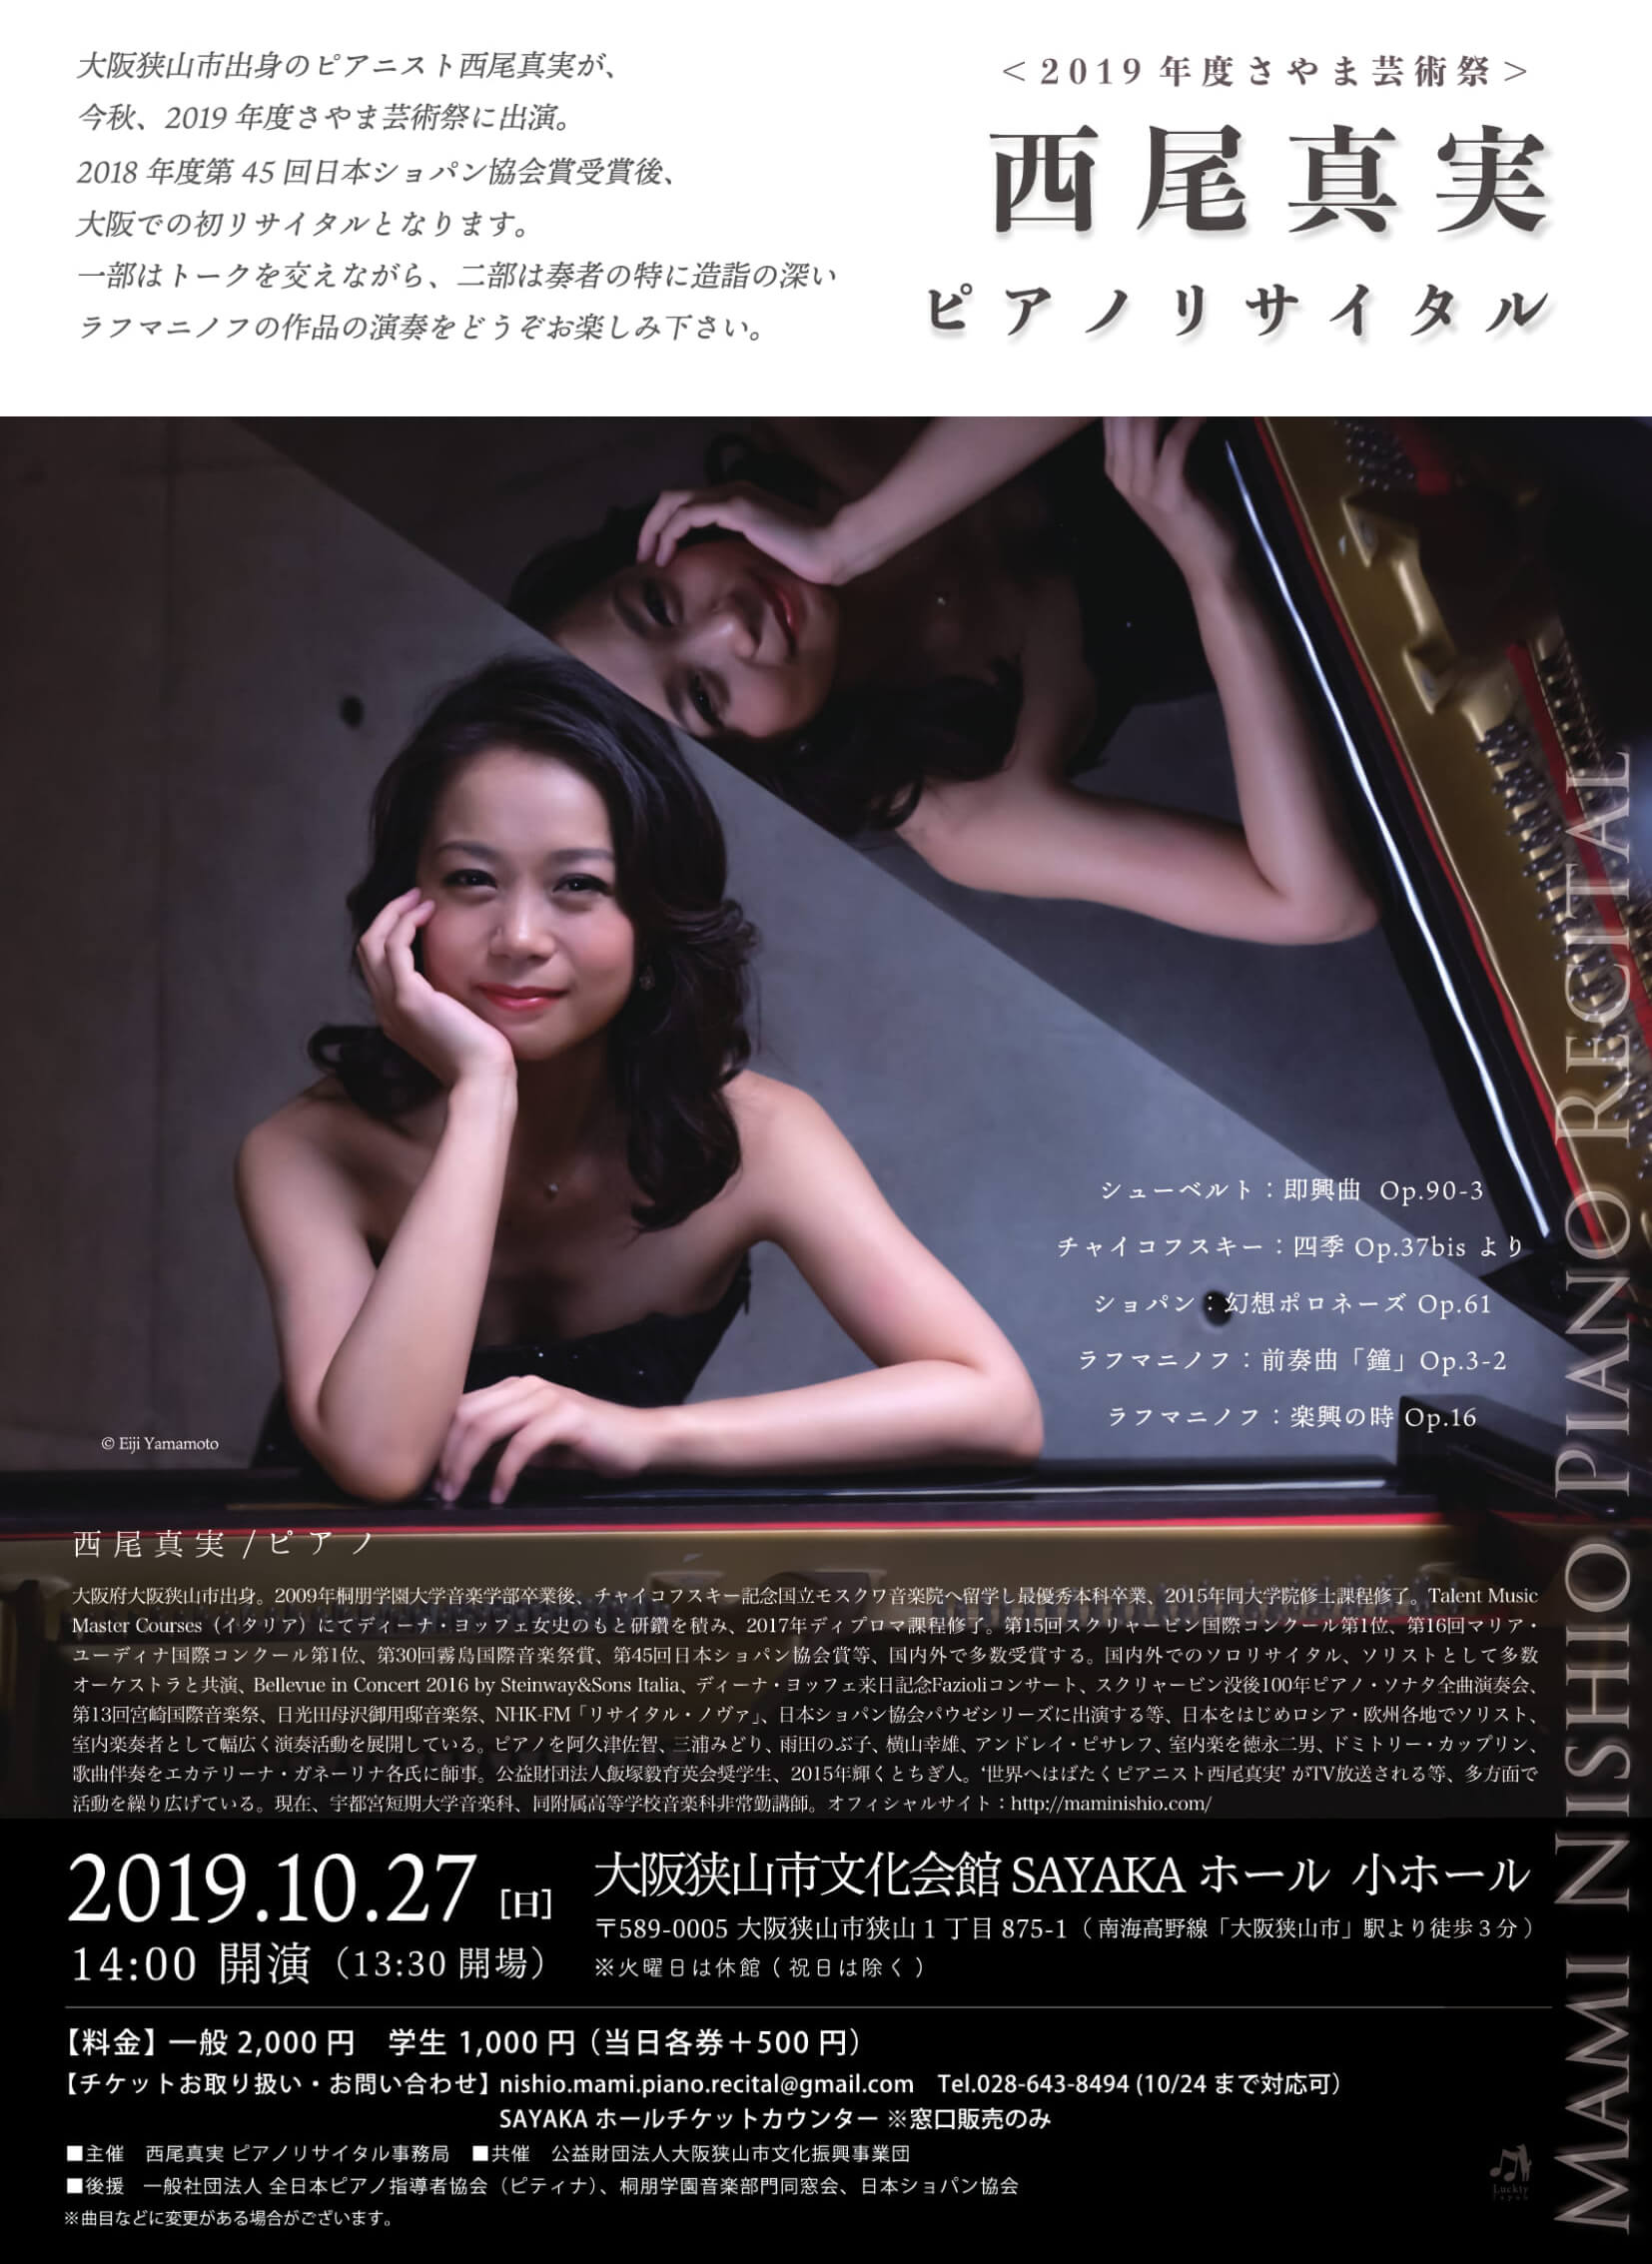 【大阪狭山市出身ピアニスト】2019年度さやま芸術祭「西尾真実 ピアノリサイタル」が10月27日にSAYAKAホールで開催されます